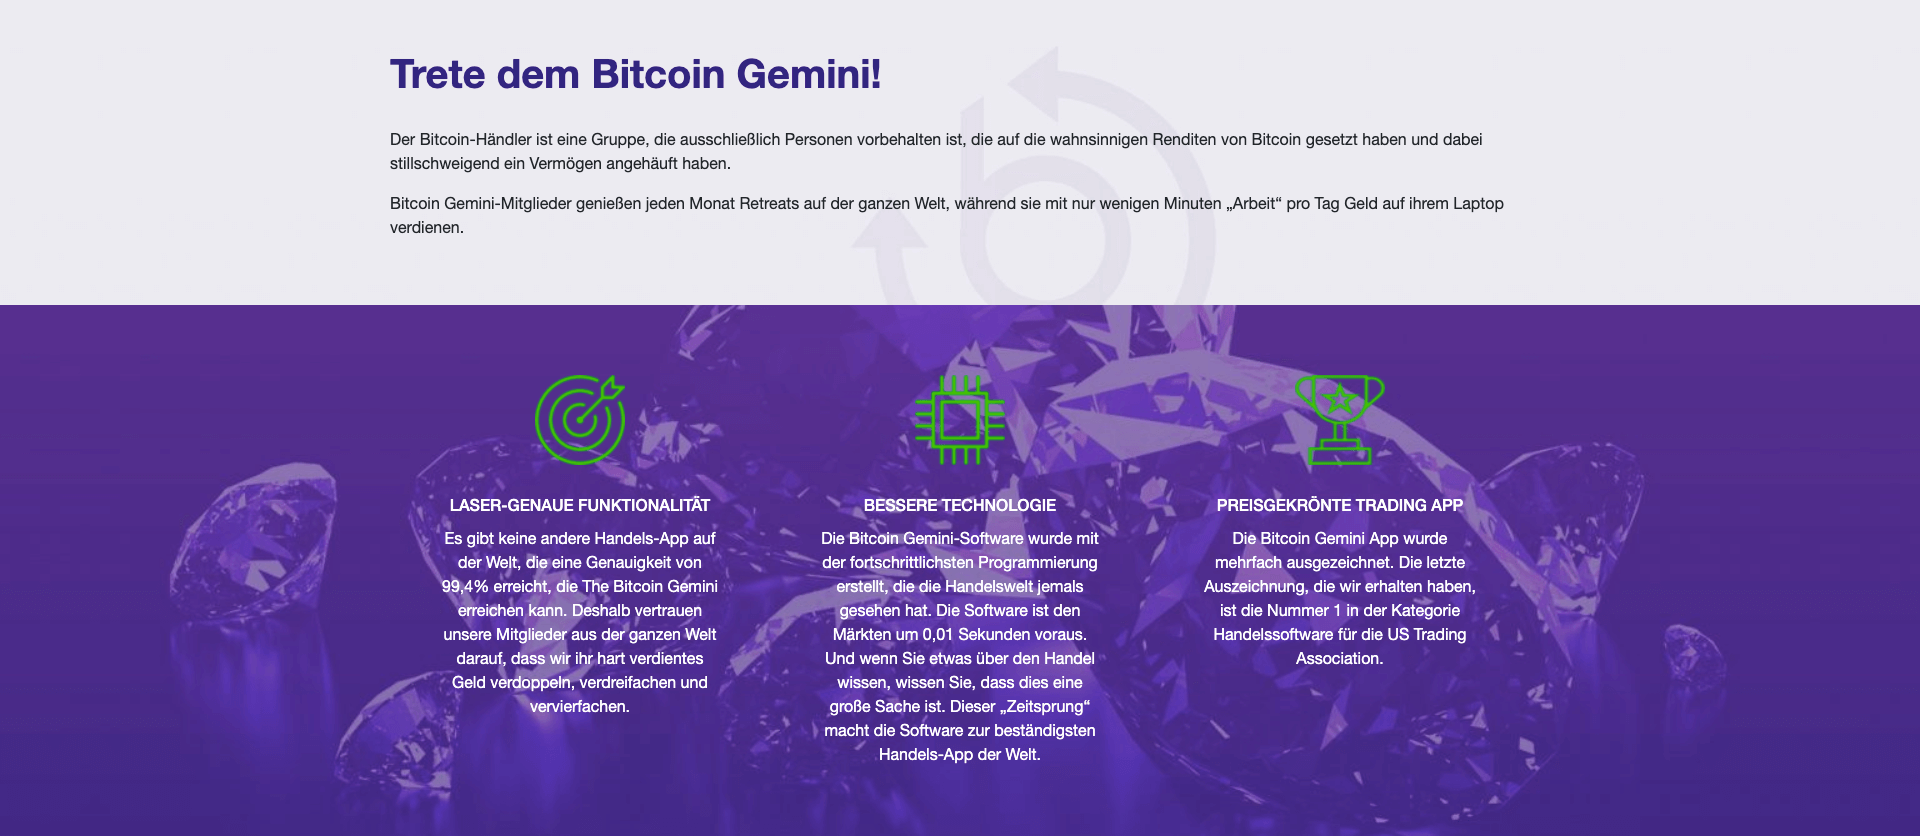 Über Bitcoin Gemini